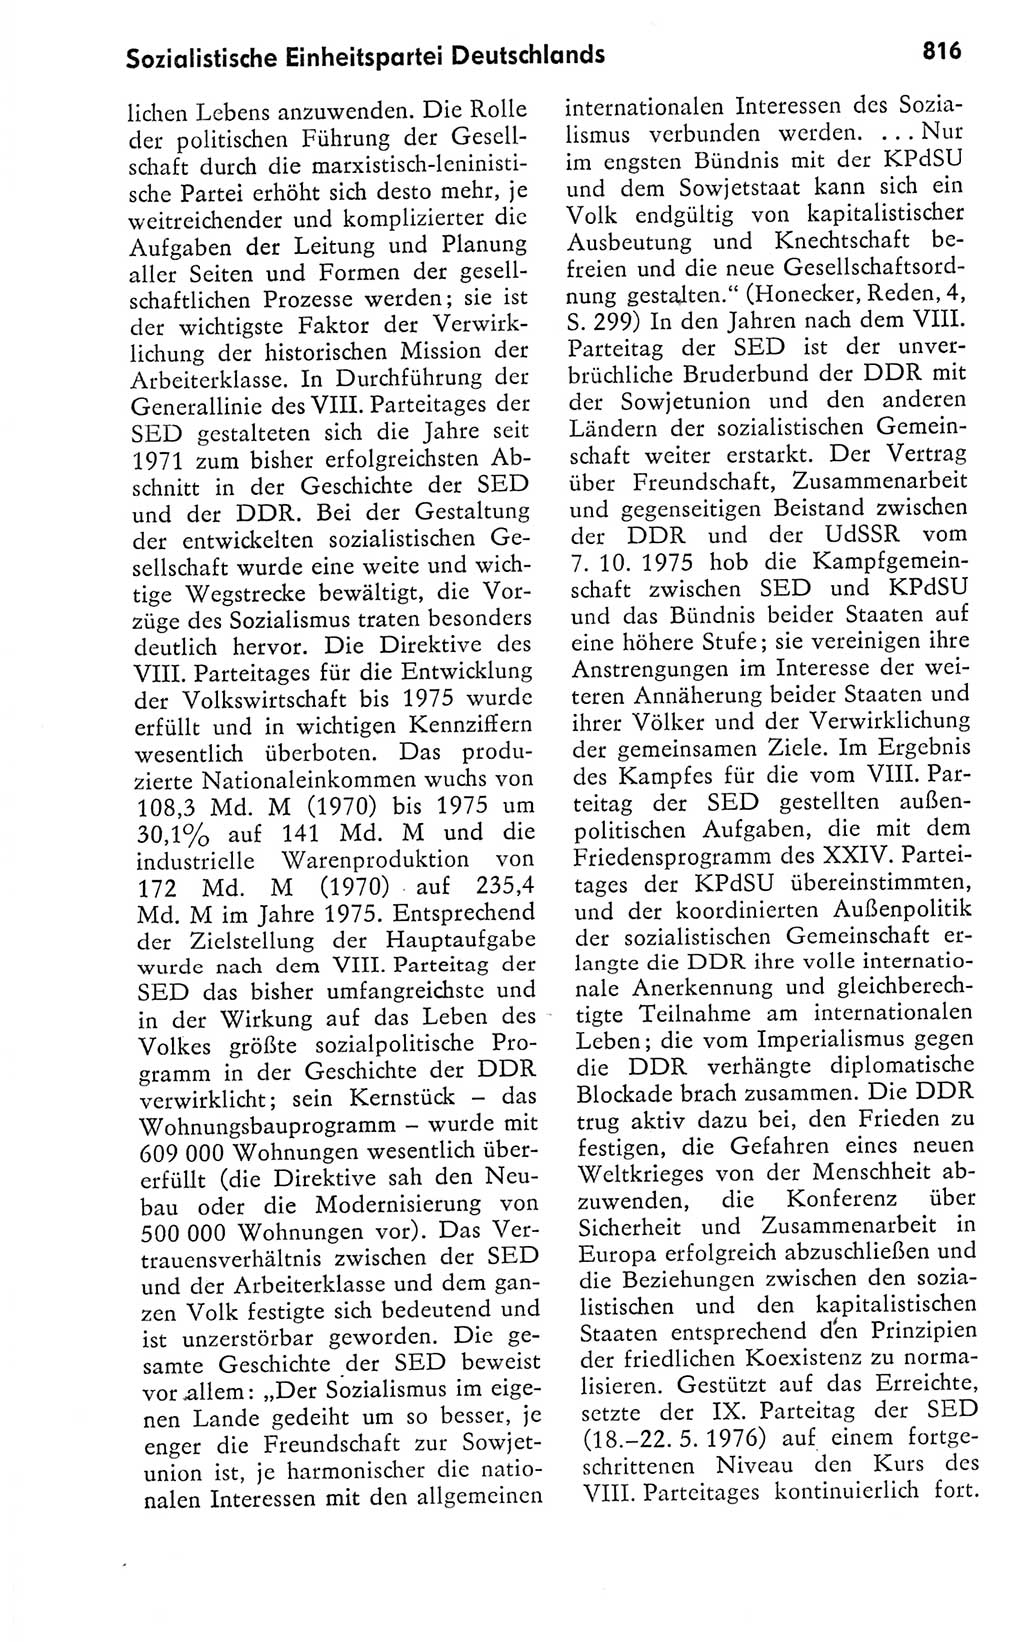 Kleines politisches Wörterbuch [Deutsche Demokratische Republik (DDR)] 1978, Seite 816 (Kl. pol. Wb. DDR 1978, S. 816)